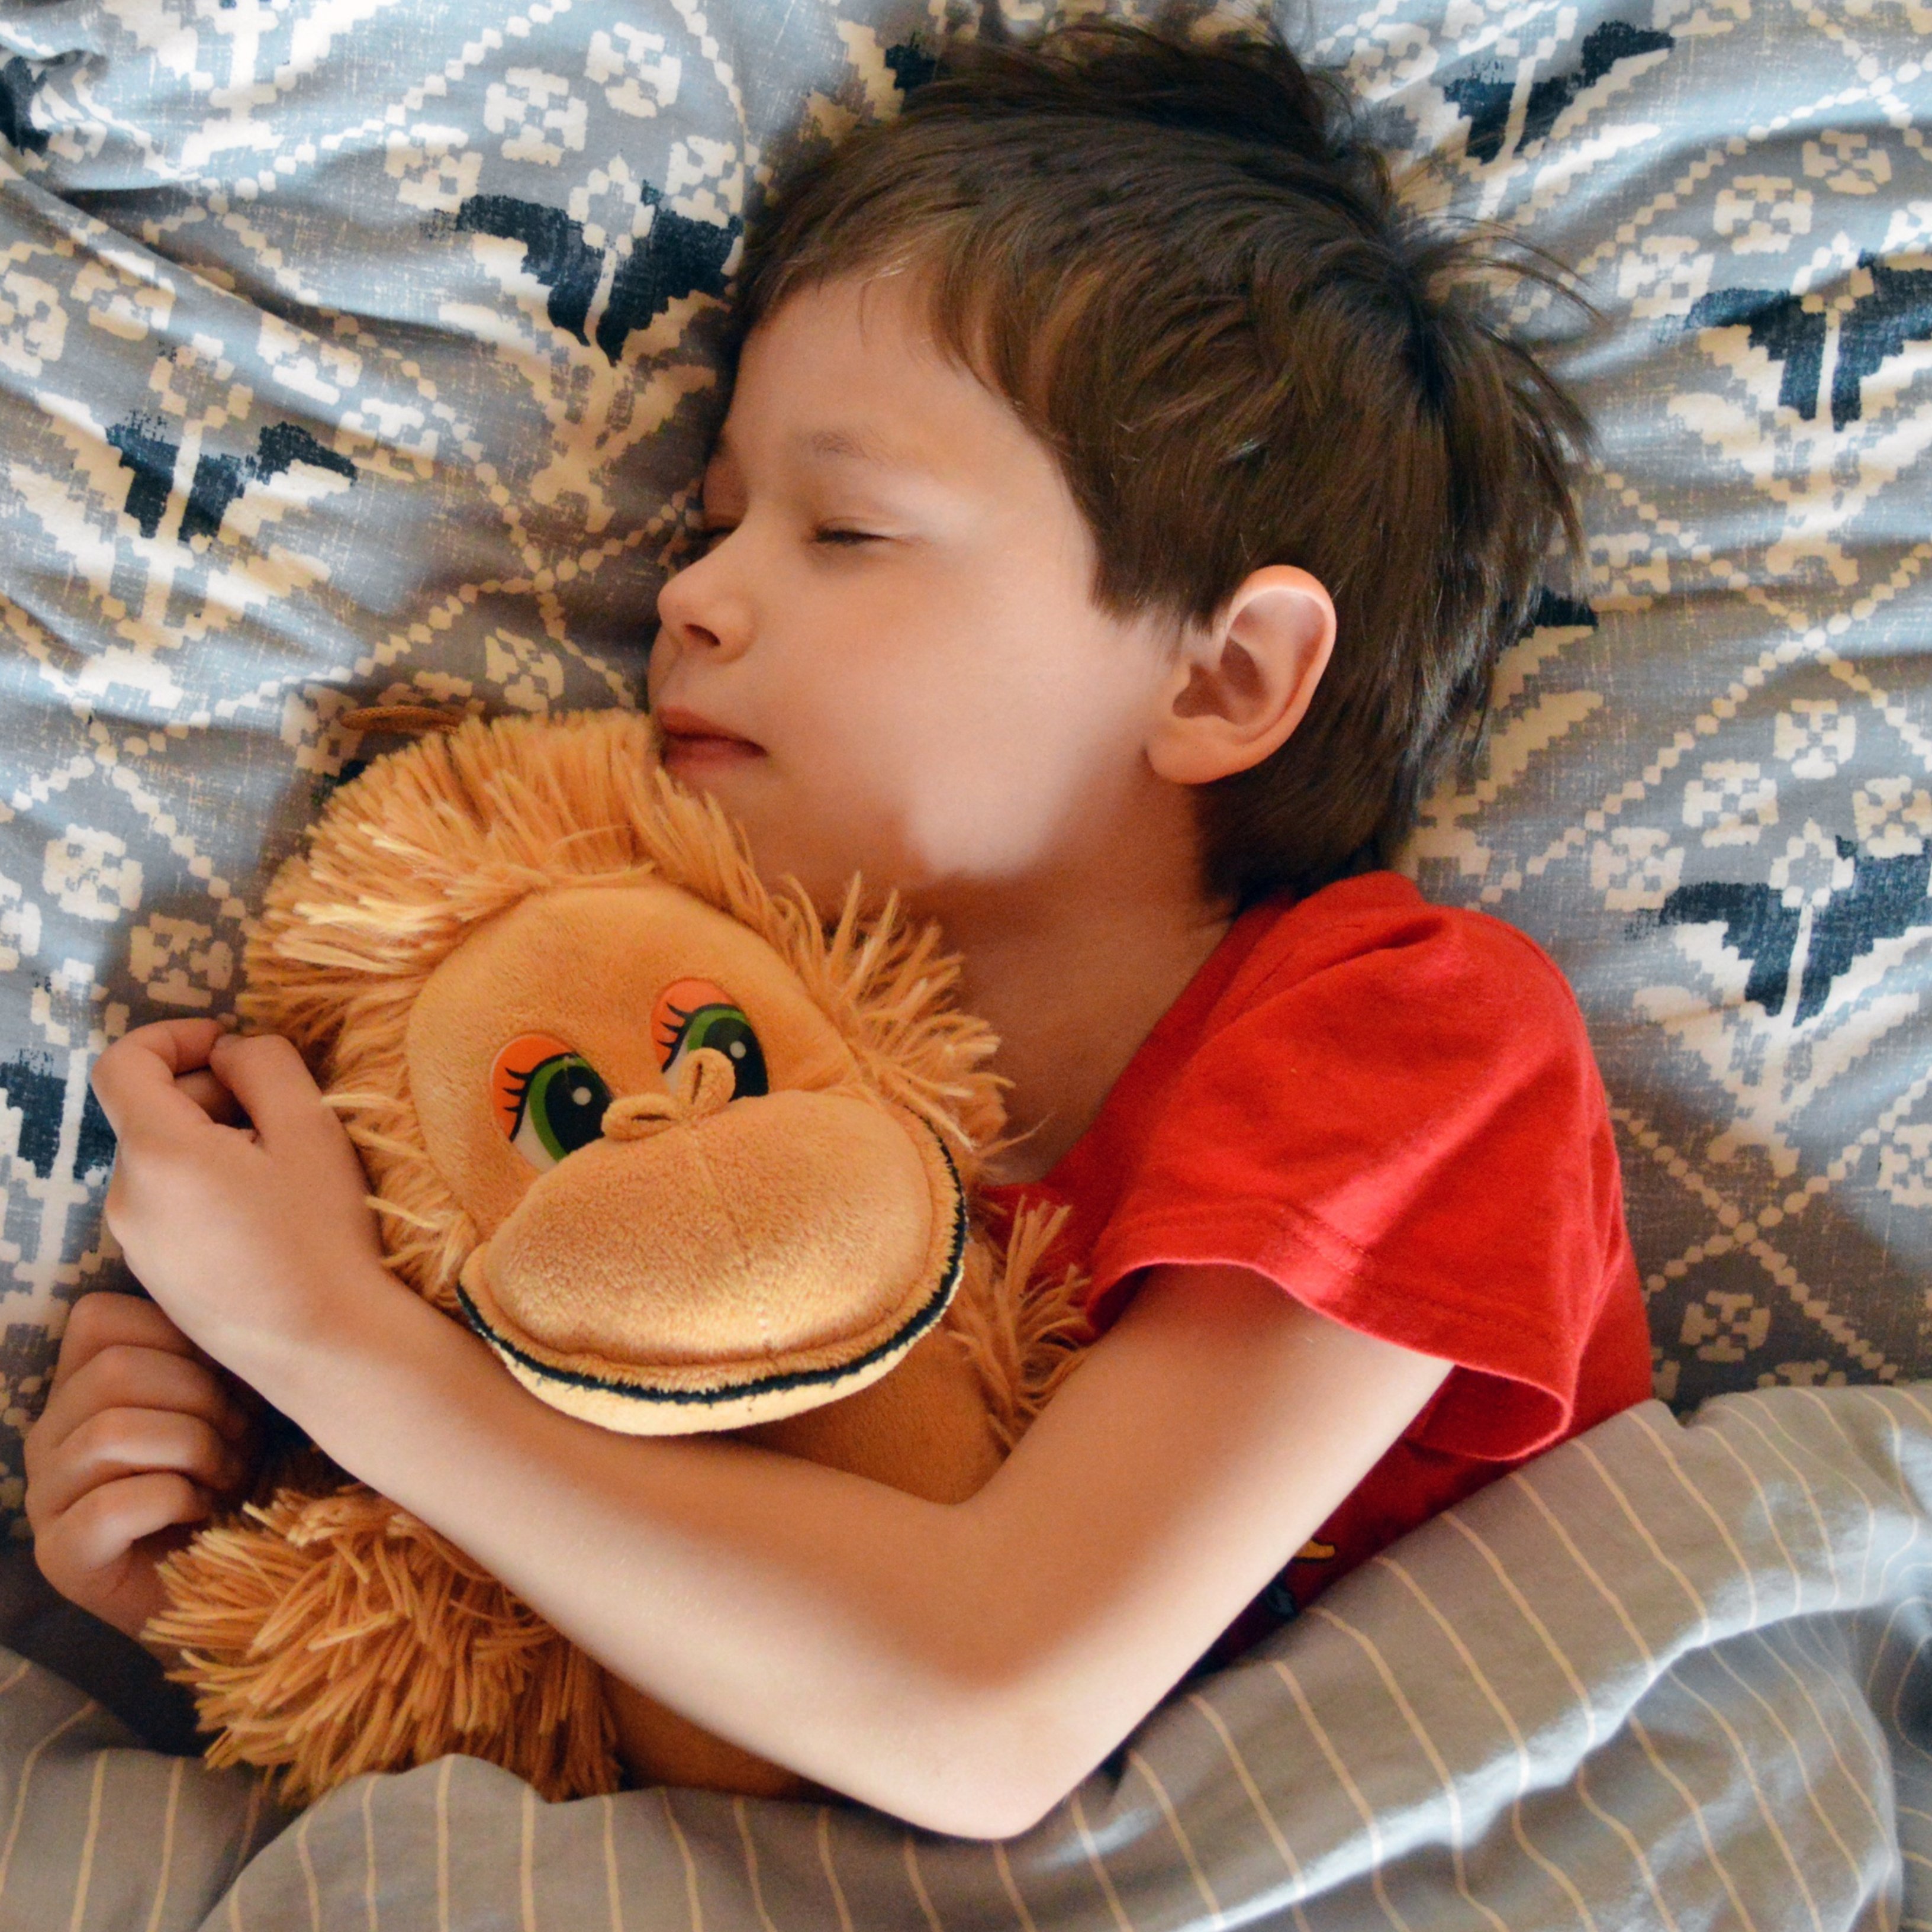 Set consells útils perquè els nens aconsegueixin dormir bé